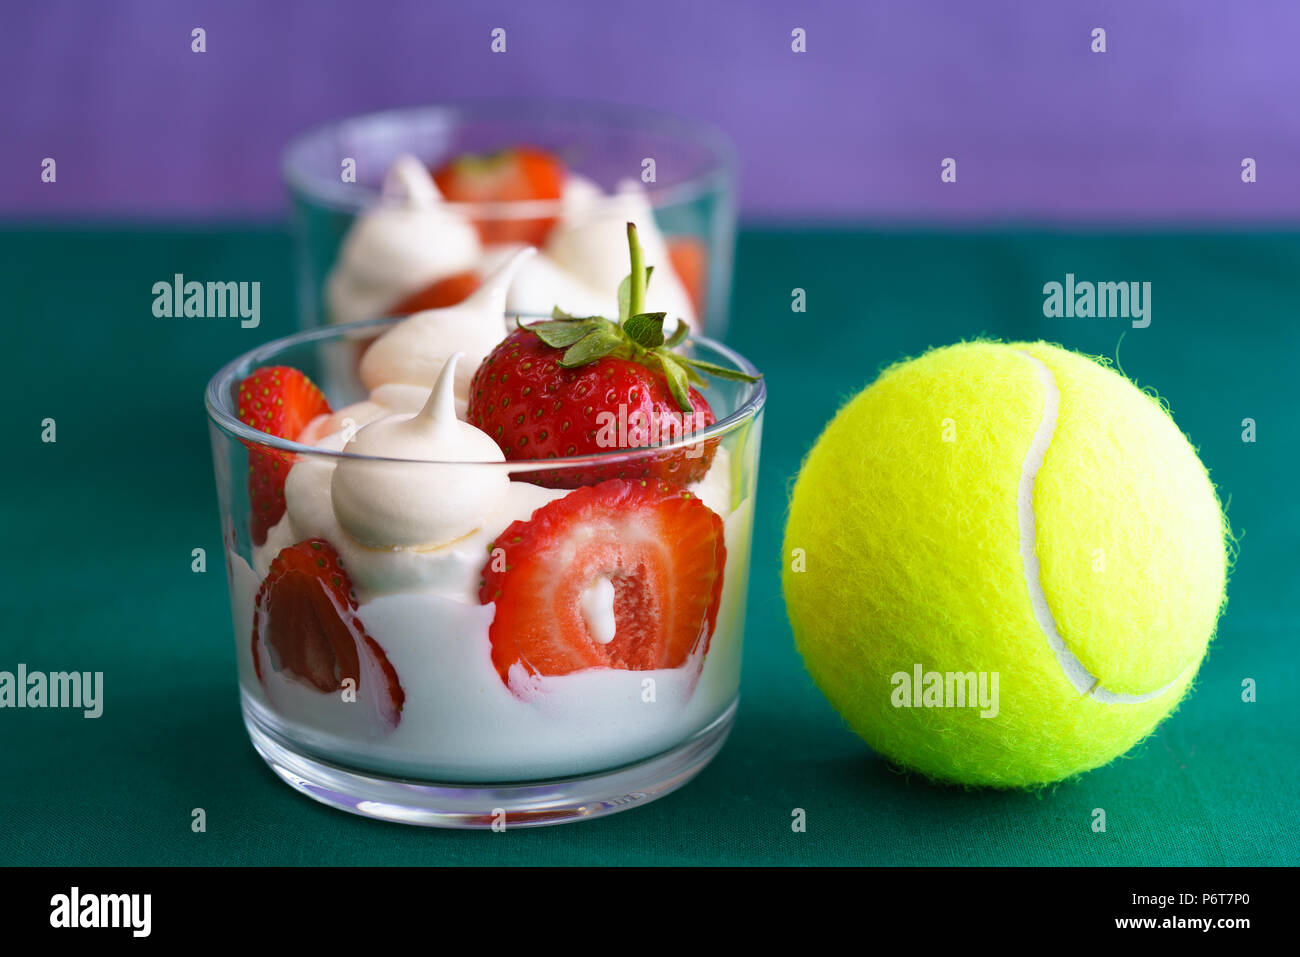 Wimbledon inspirado de crema batida, Merengues y fresas frescas en un recipiente de cristal sobre un fondo de color verde y violeta con una pelota de tenis Foto de stock